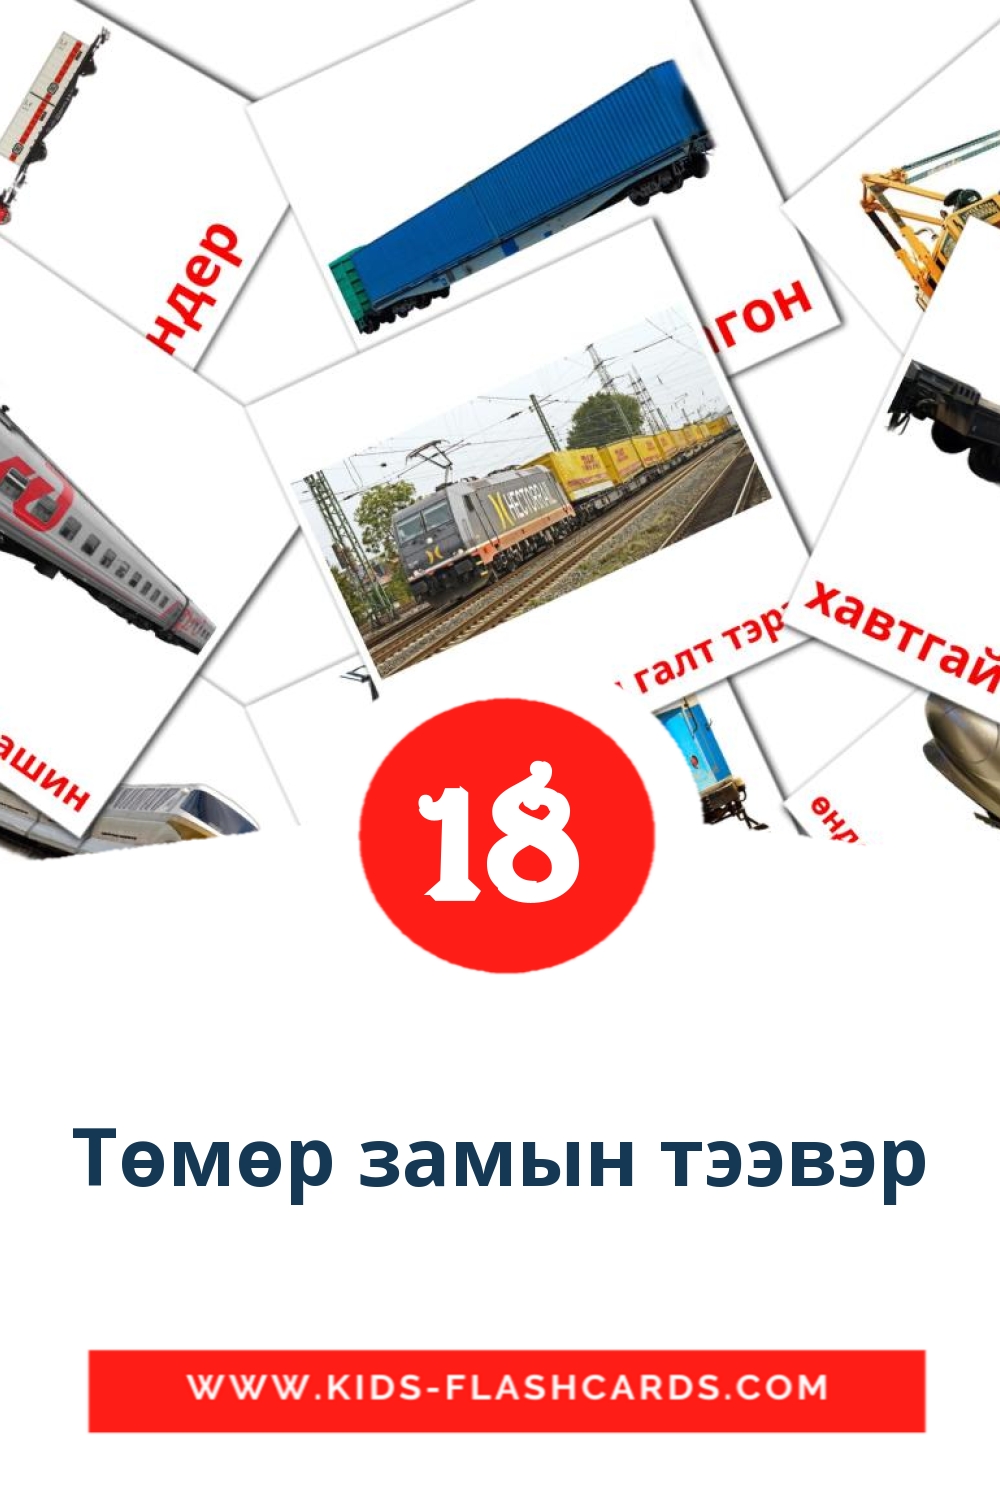 18 Cartões com Imagens de Төмөр замын тээвэр para Jardim de Infância em mongol